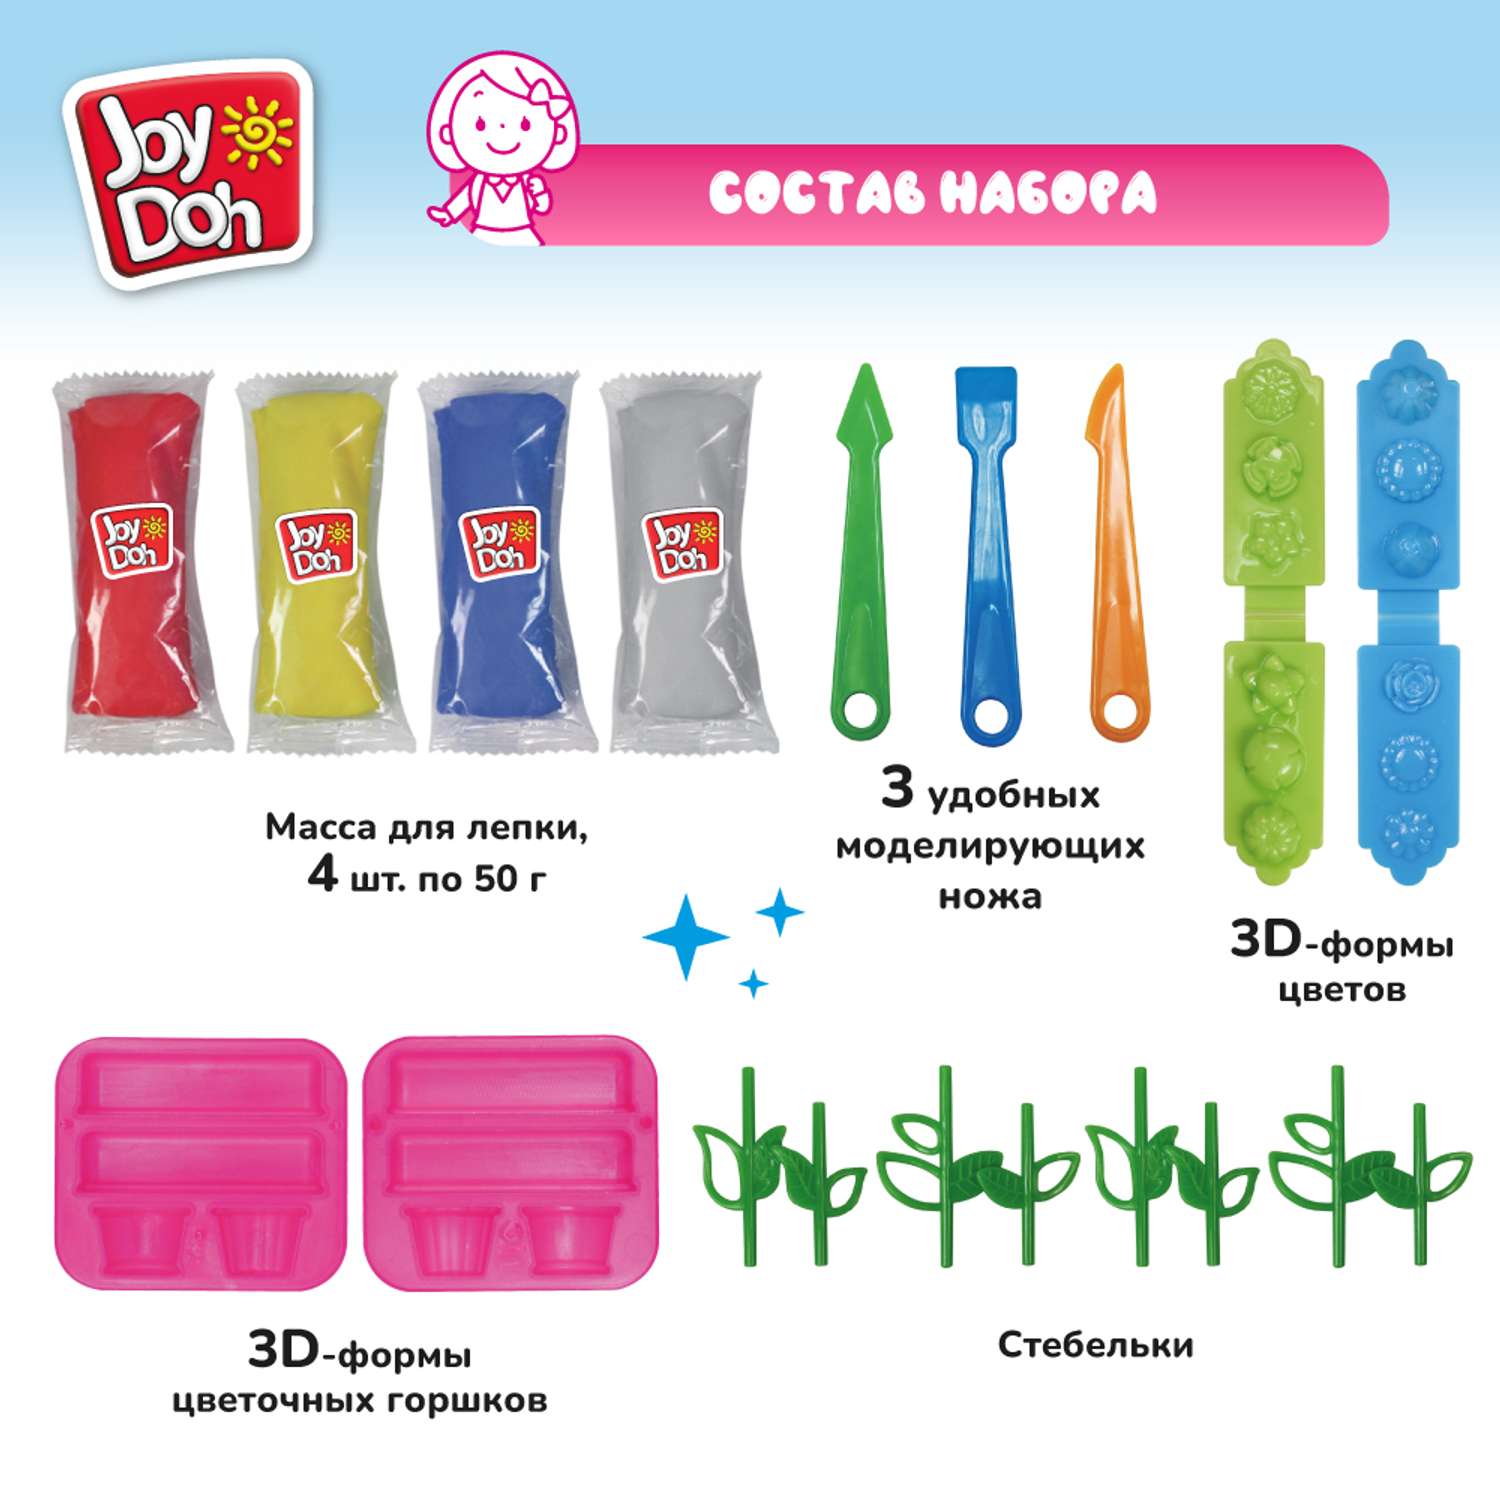 Набор для лепки Joy-Doh Цветочная оранжерея 4*50г FLOW-200 bag - фото 2